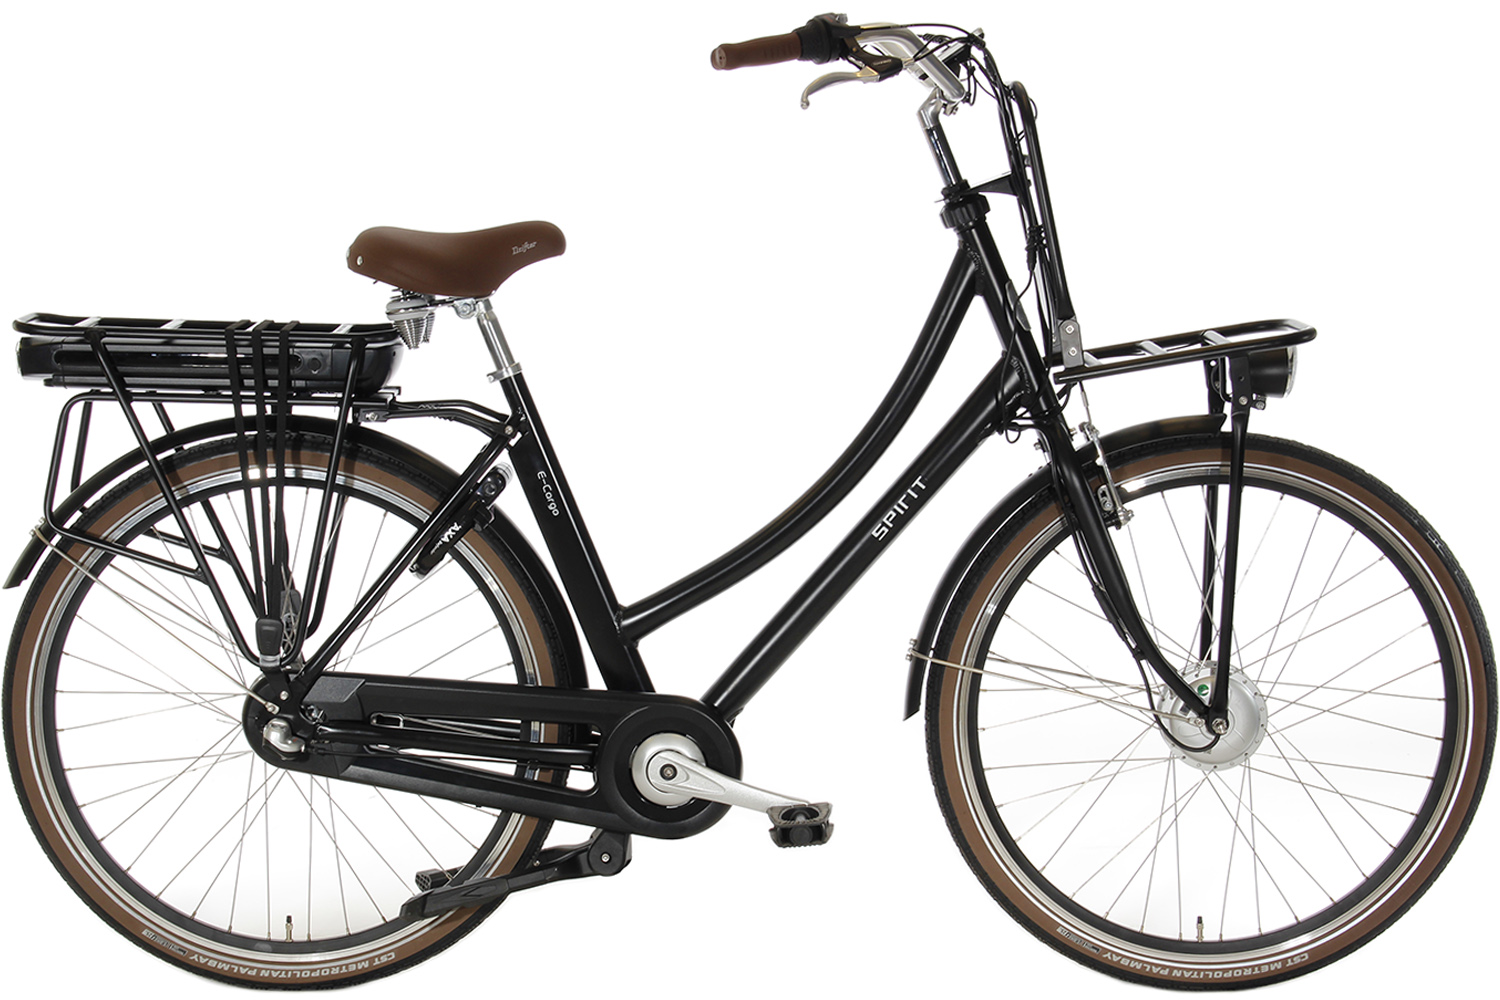 N3 Elektrische Mat-zwart | 1099,- Euro | City-Bikes.nl